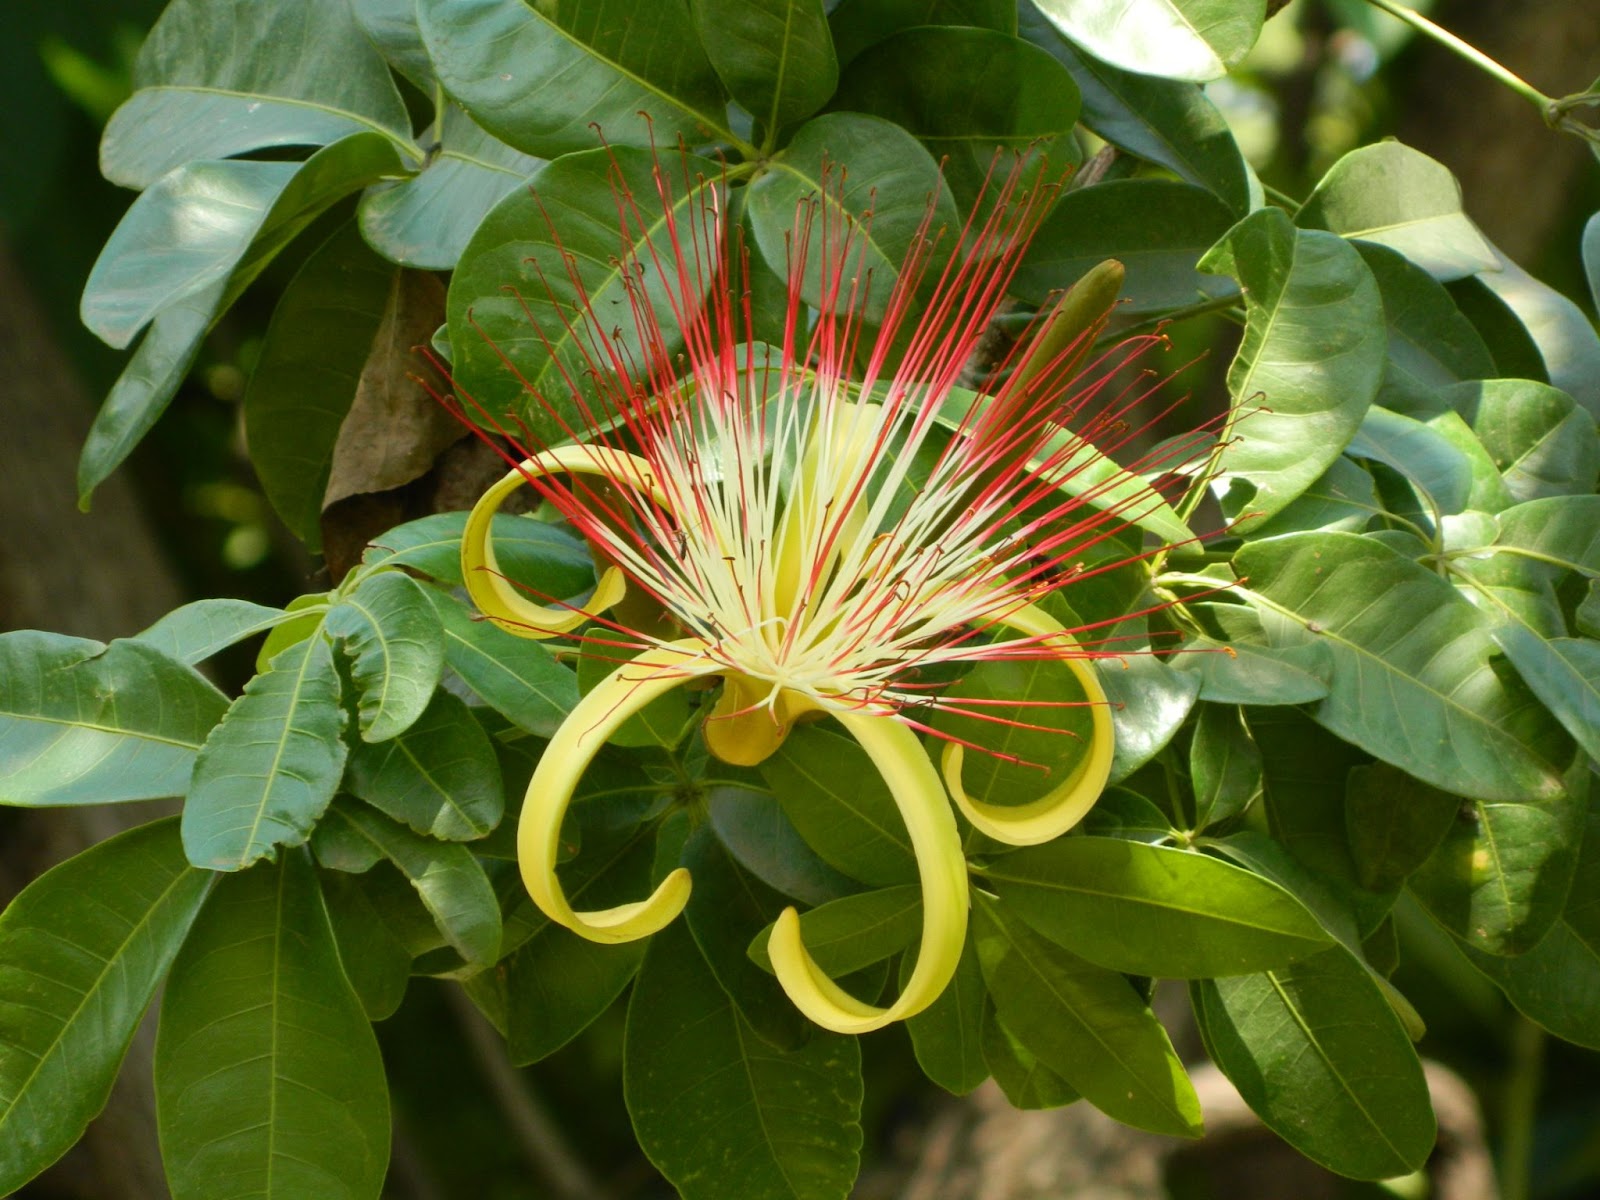 Flor com aspecto espinhento, de pontas vermelhas e a base verde clara. Ao fundo, as folhas da espécie.